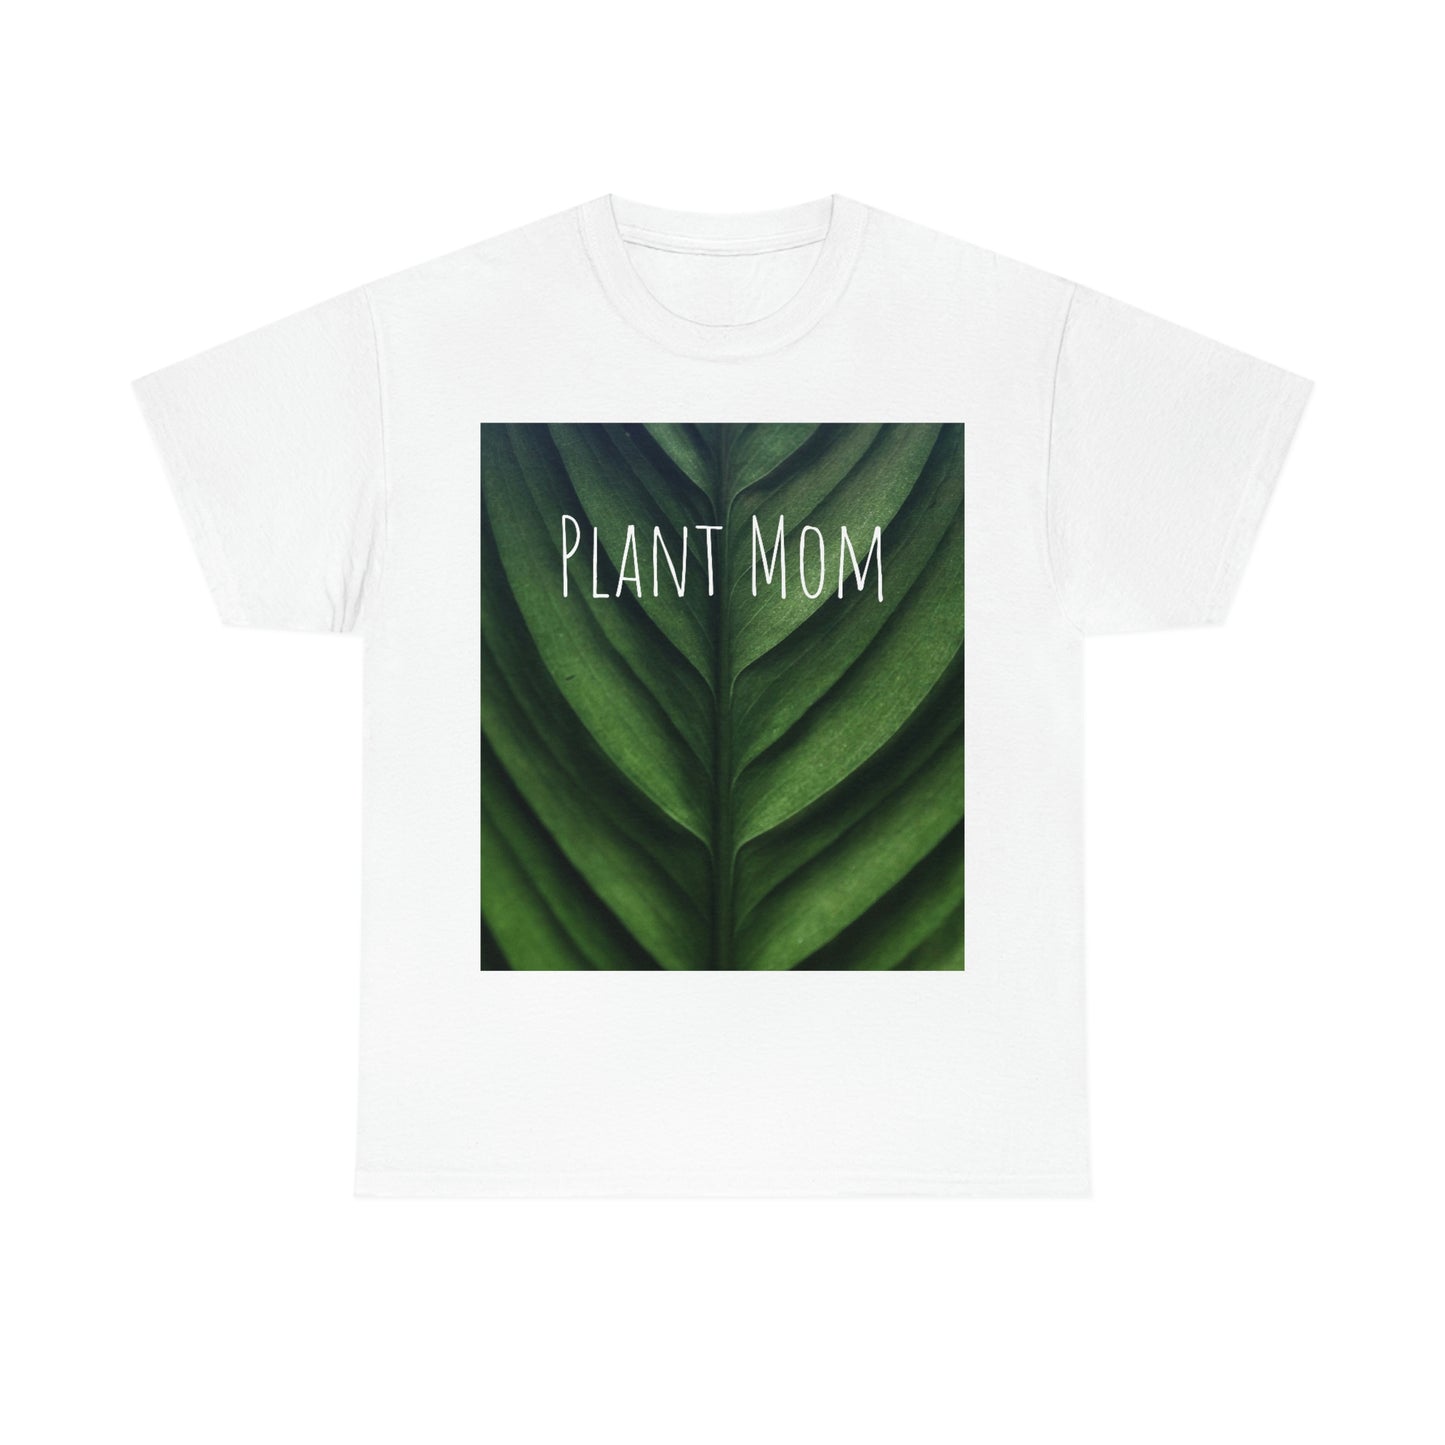 Women's "Plant Mom" Heavy Cotton Tee